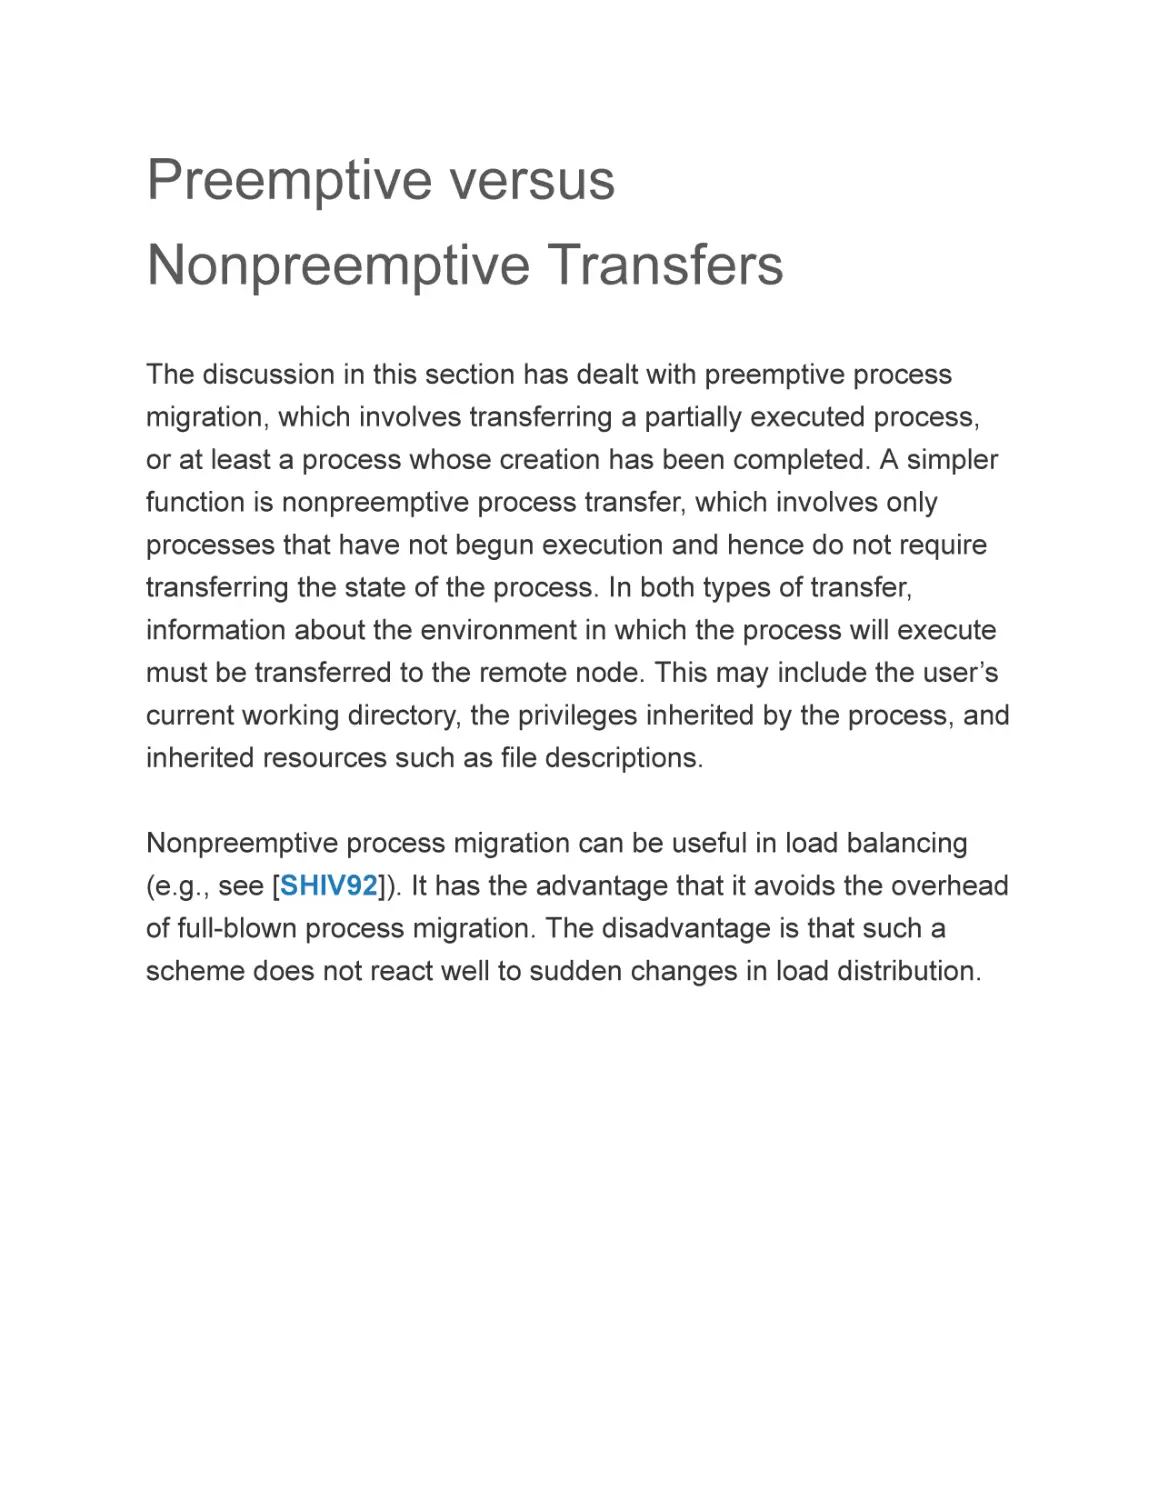 Preemptive versus Nonpreemptive Transfers